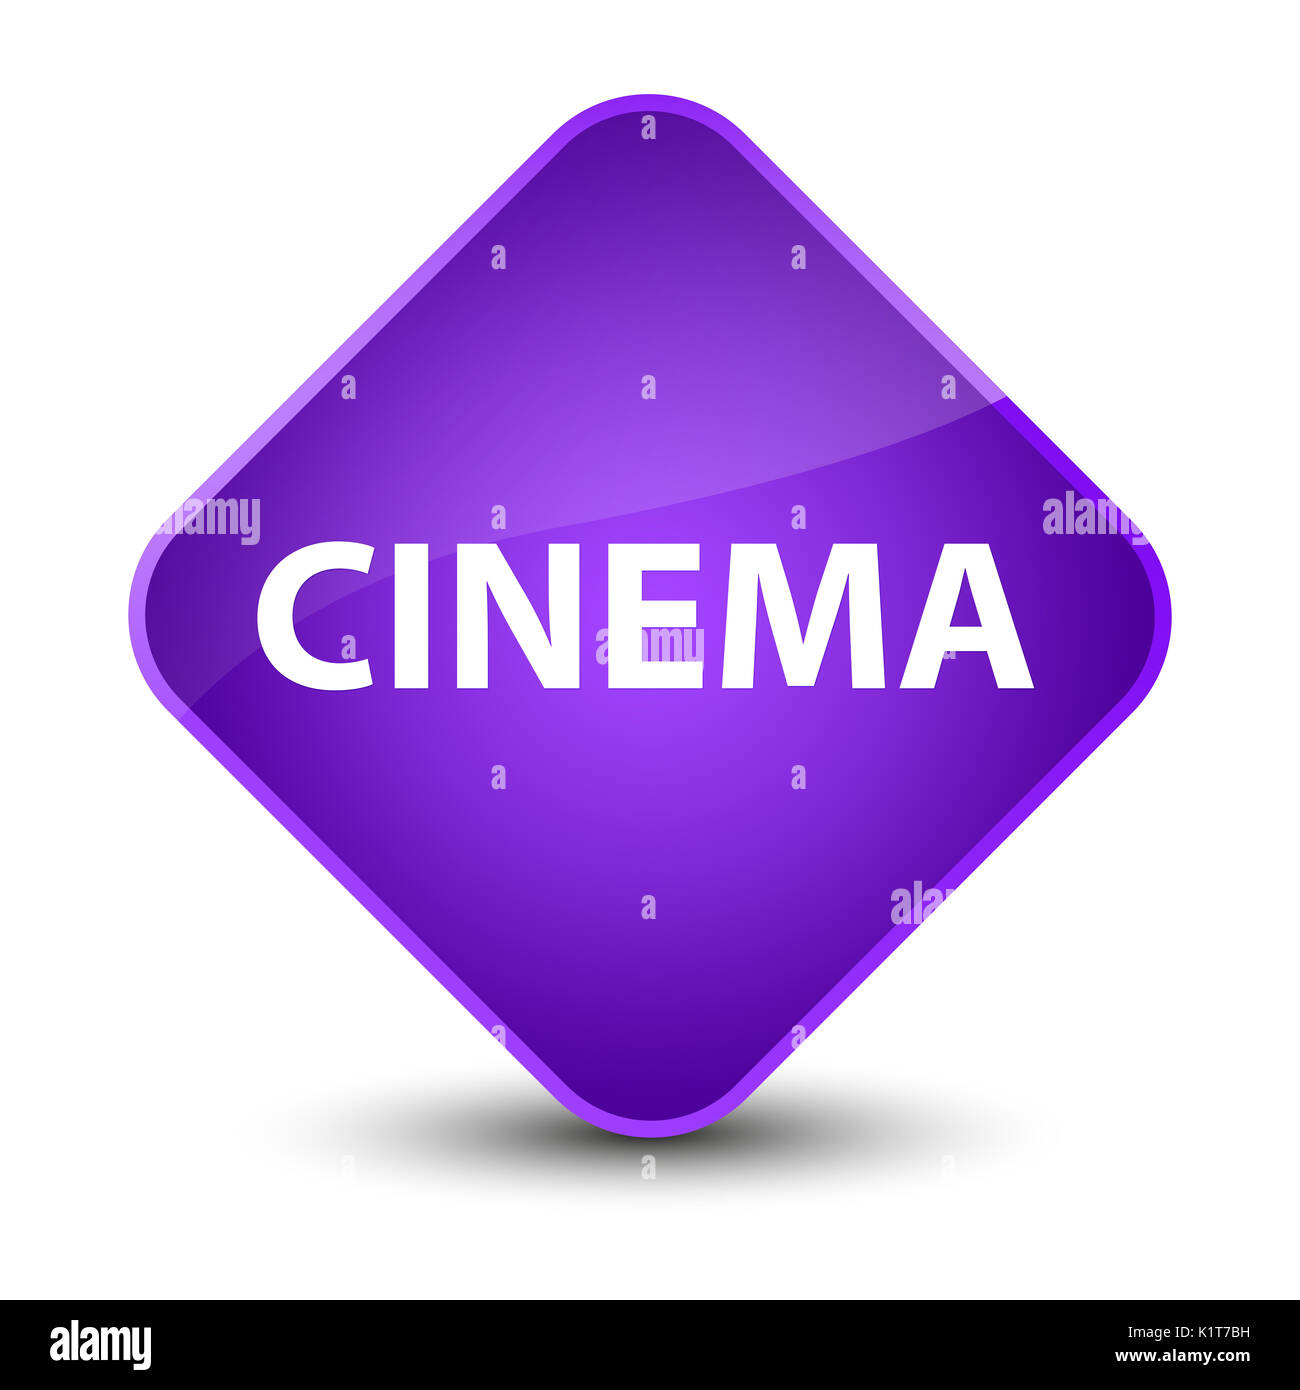 Cinema isolated on elegant purple diamond button abstract illustration Stock Photo